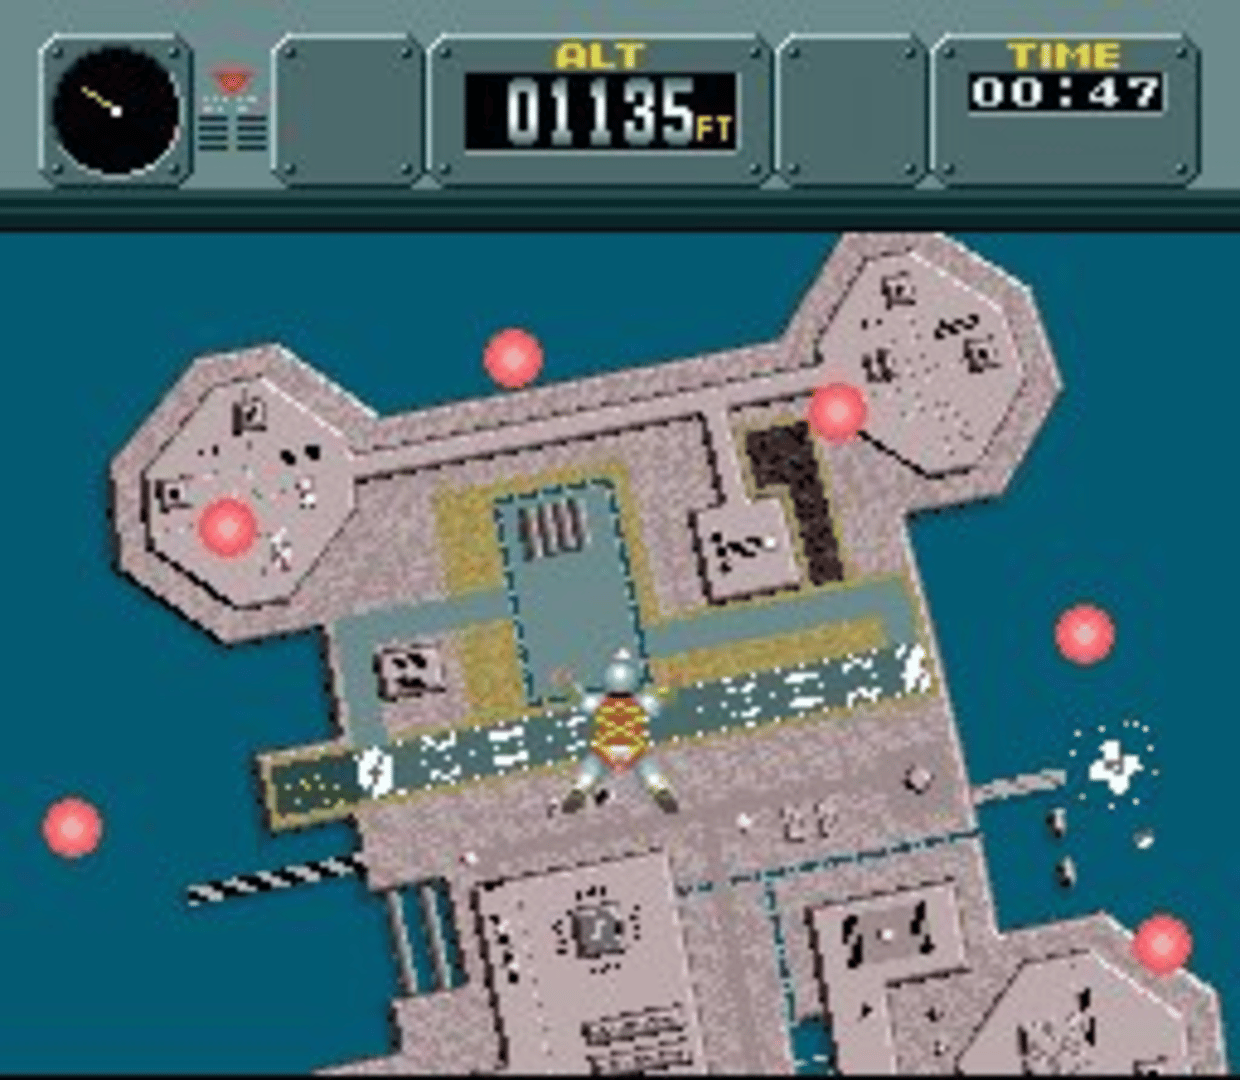 Pilotwings screenshot